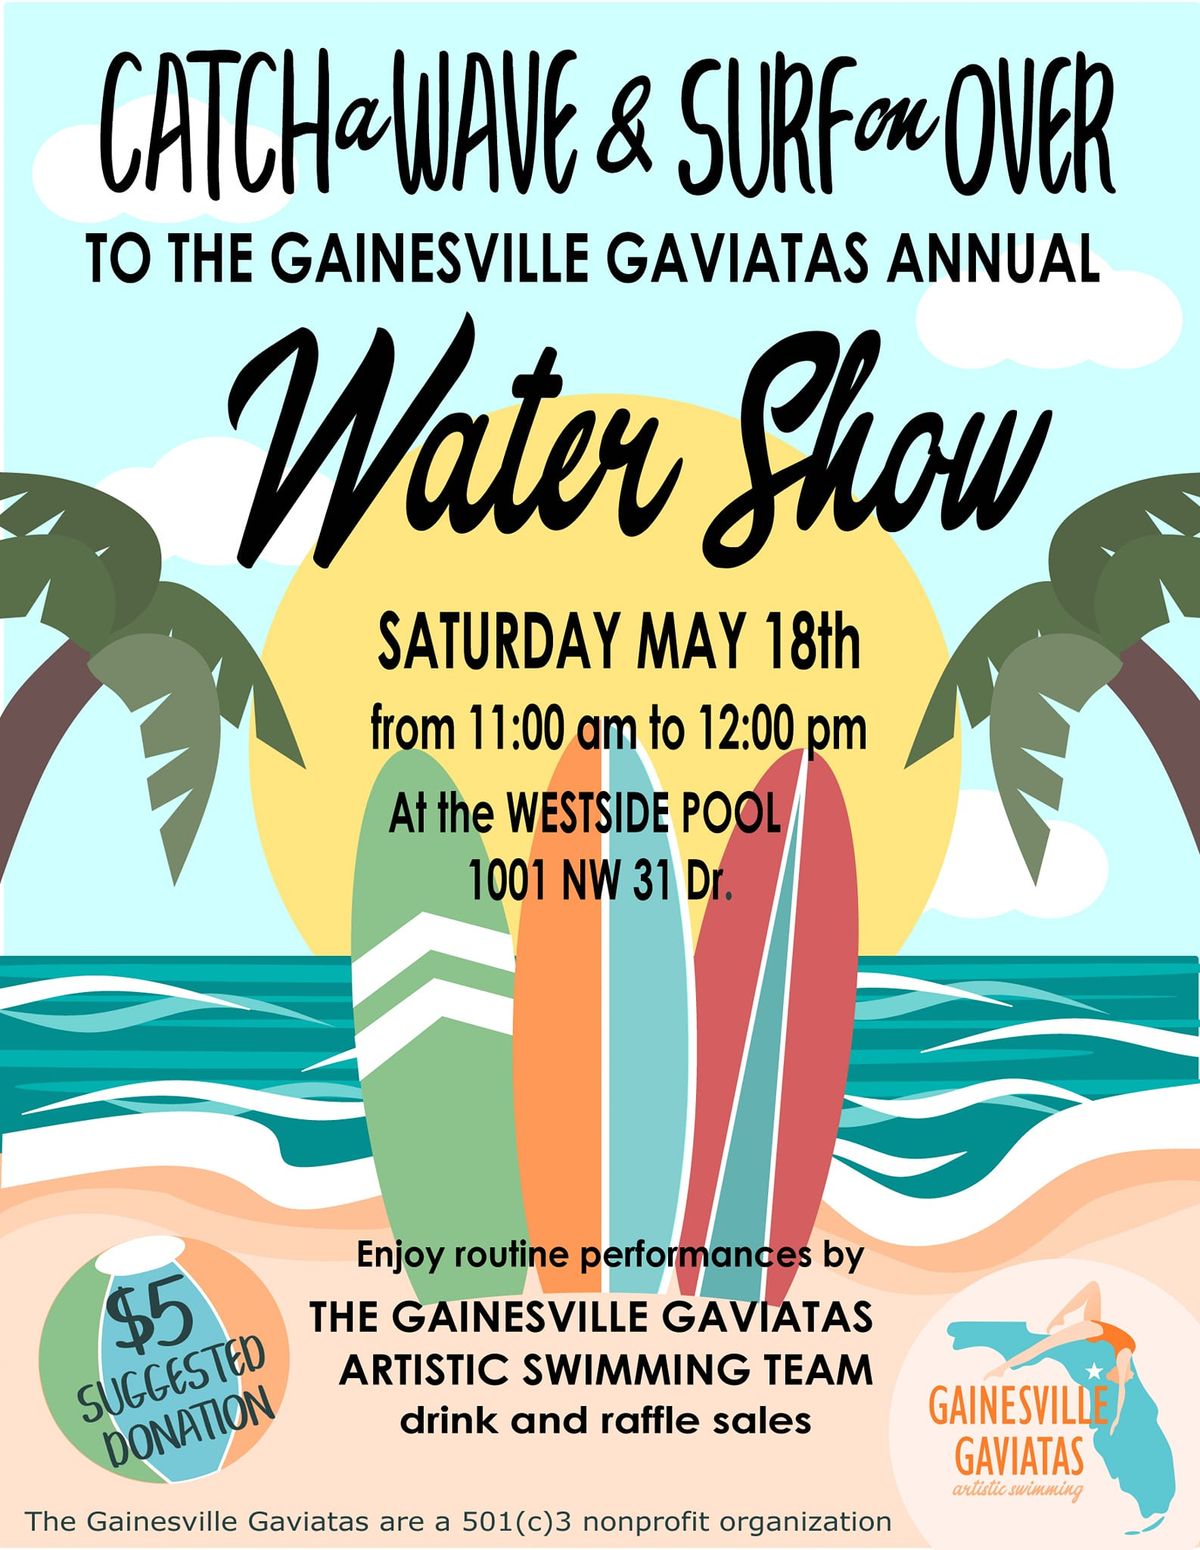 Gainesville Gaviatas Annual Water Show